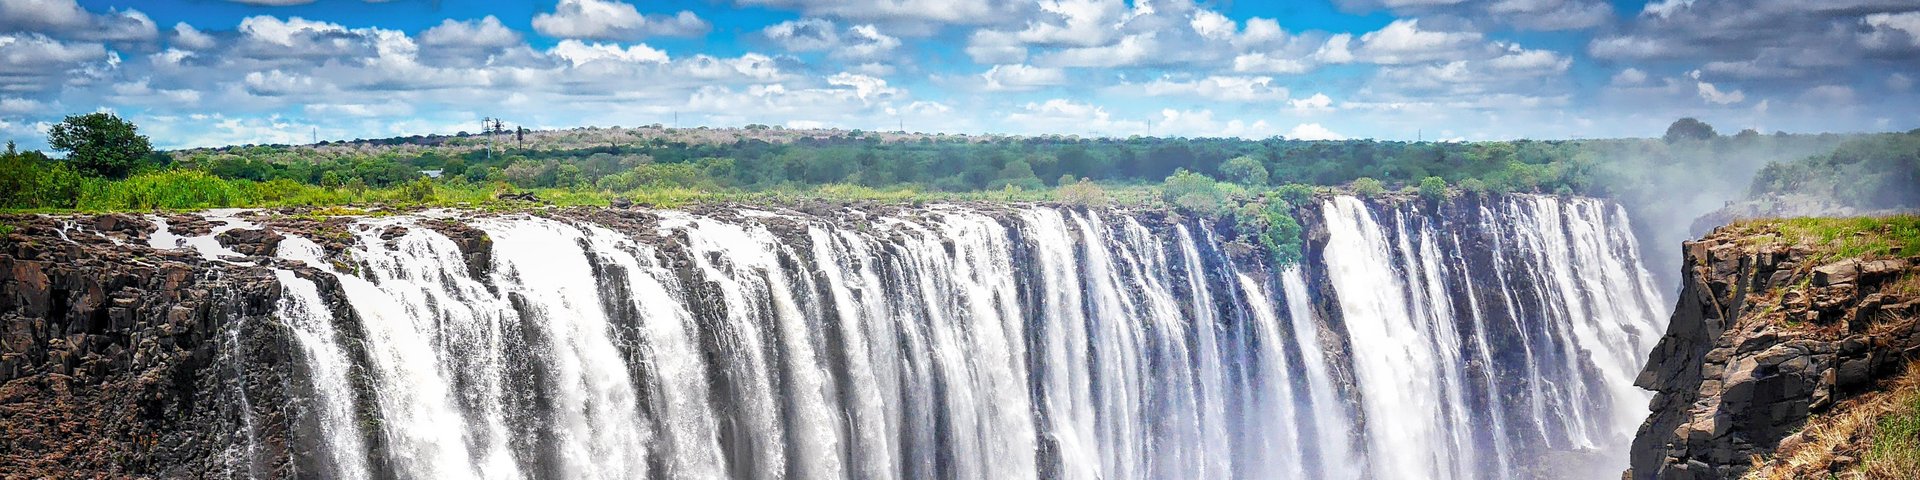 Blick auf die tosenden Victoria Falls in Sambia